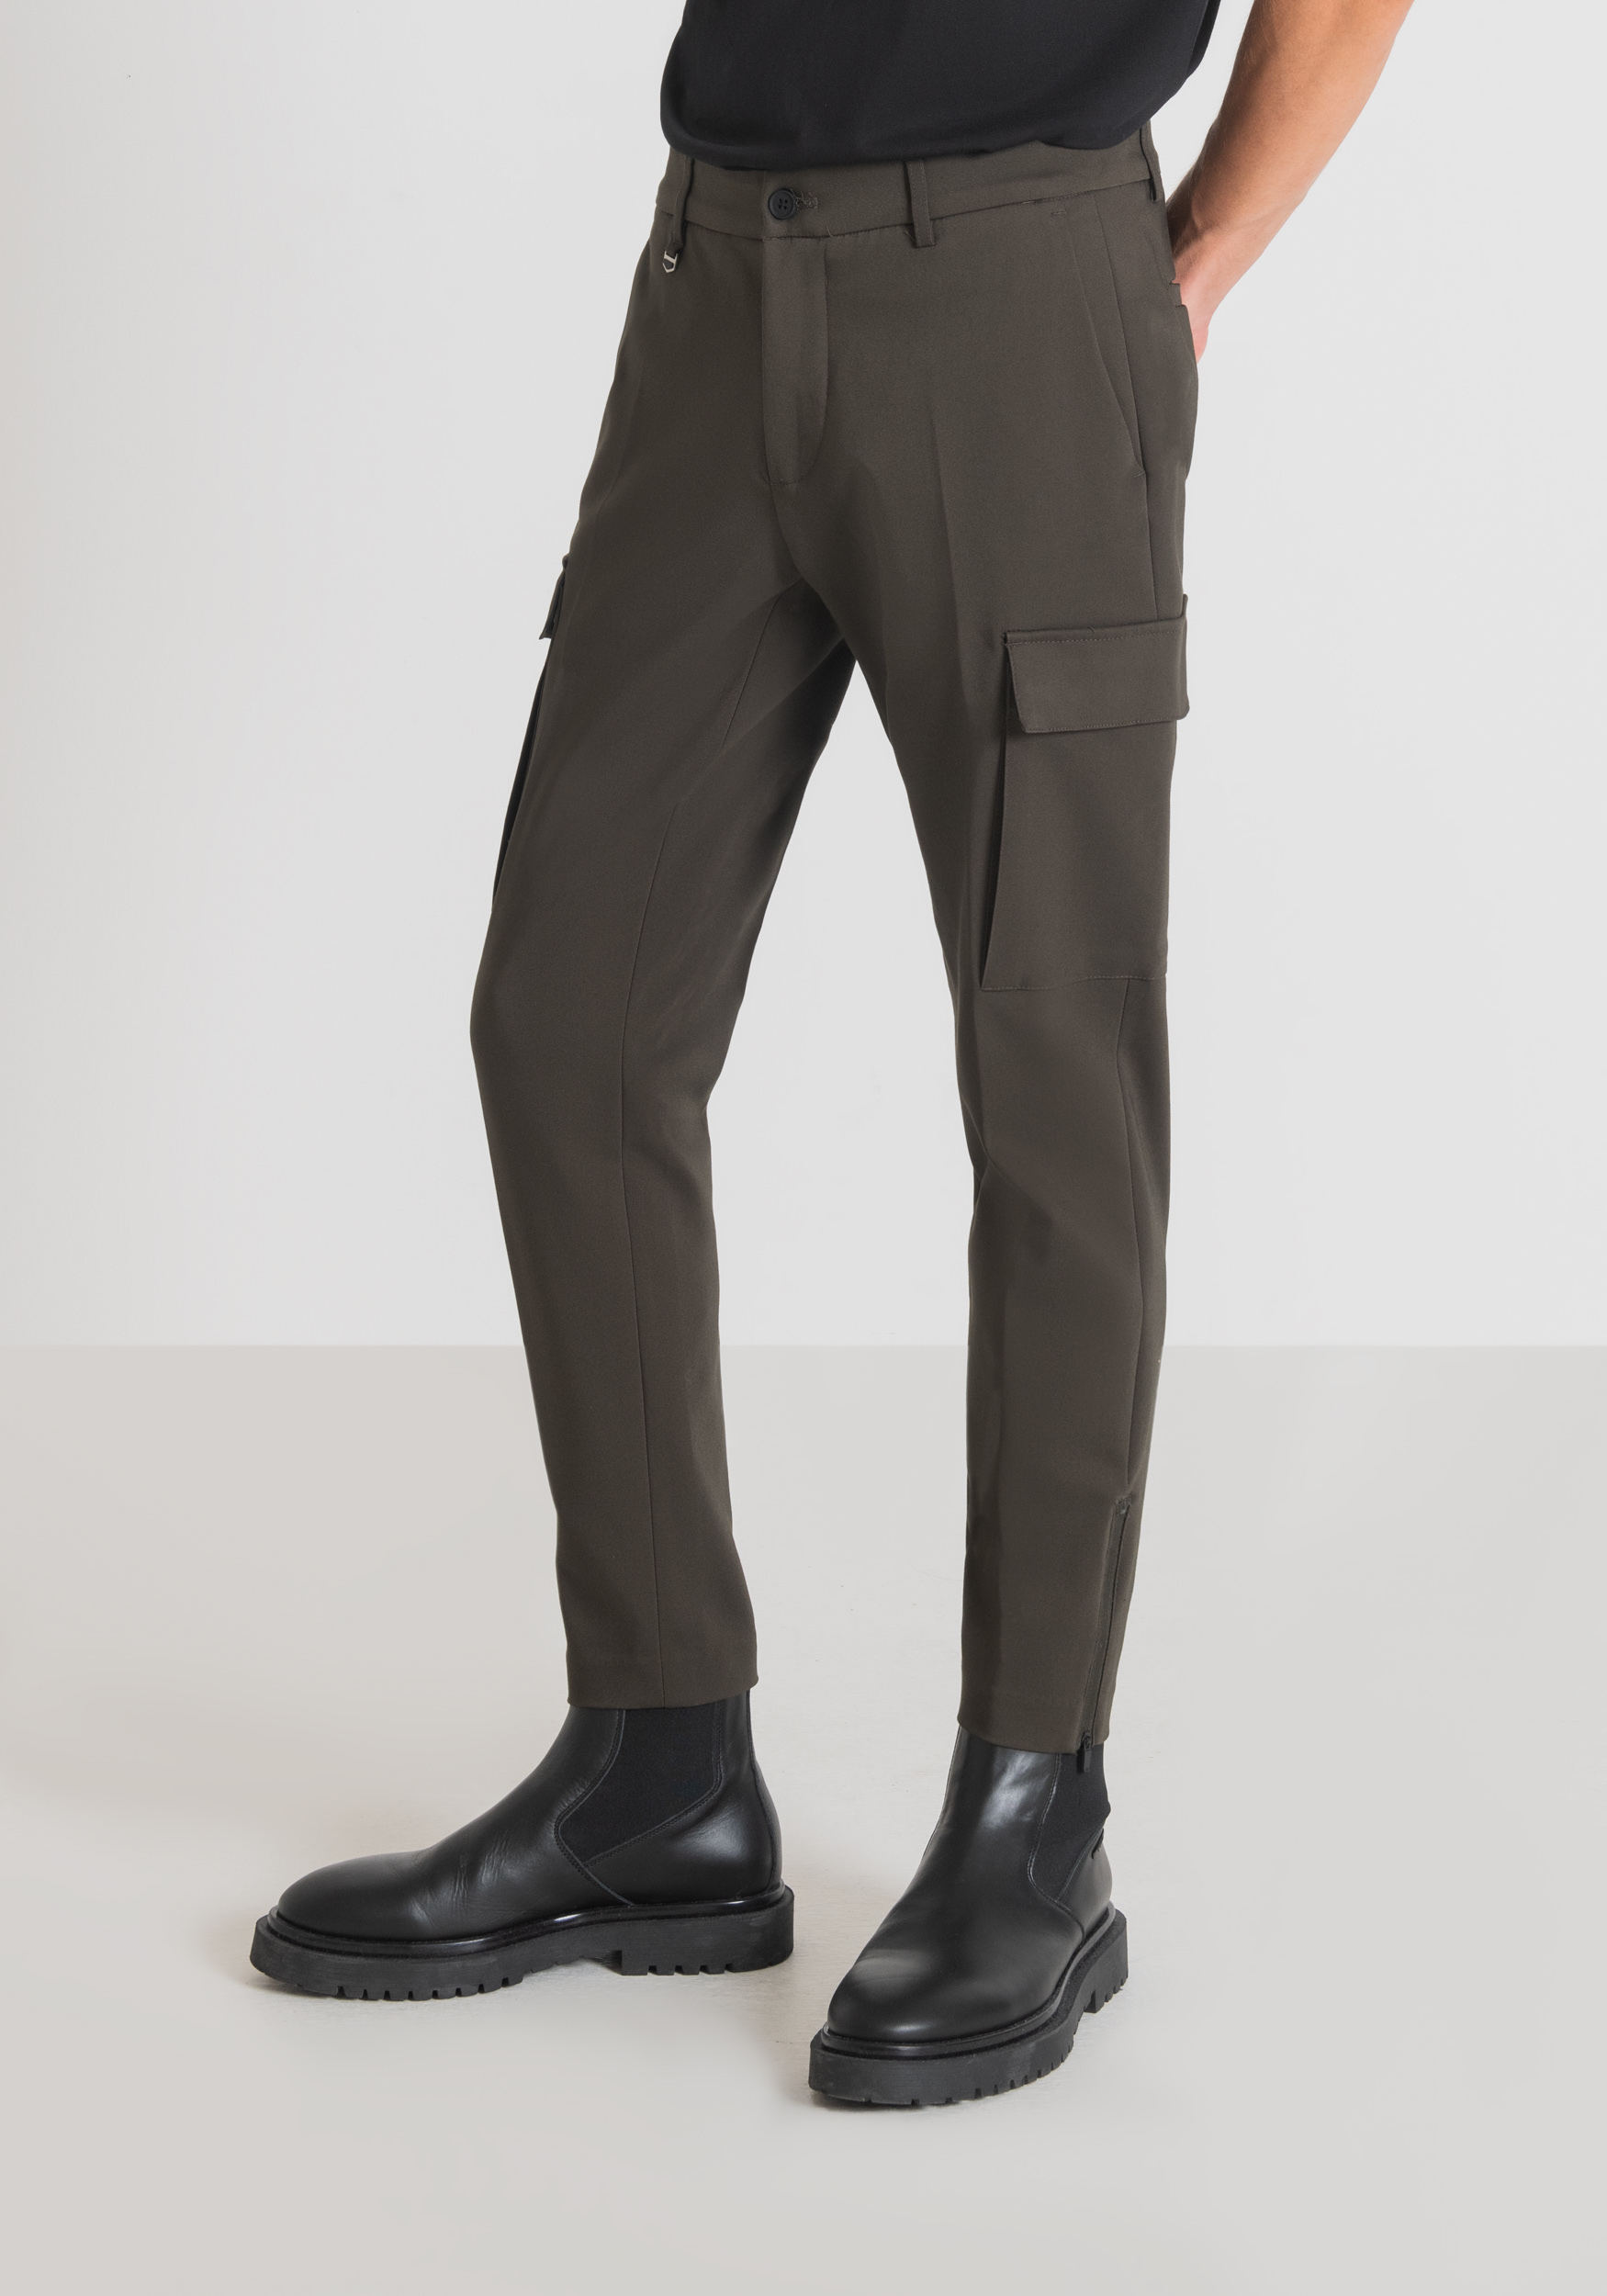 Antony Morato Pantalon Skinny Fit Bjorn En Coton Melange Elastique Avec Poches Laterales Et Zip Sur Le Bas Vert Fonce | Homme Pantalons